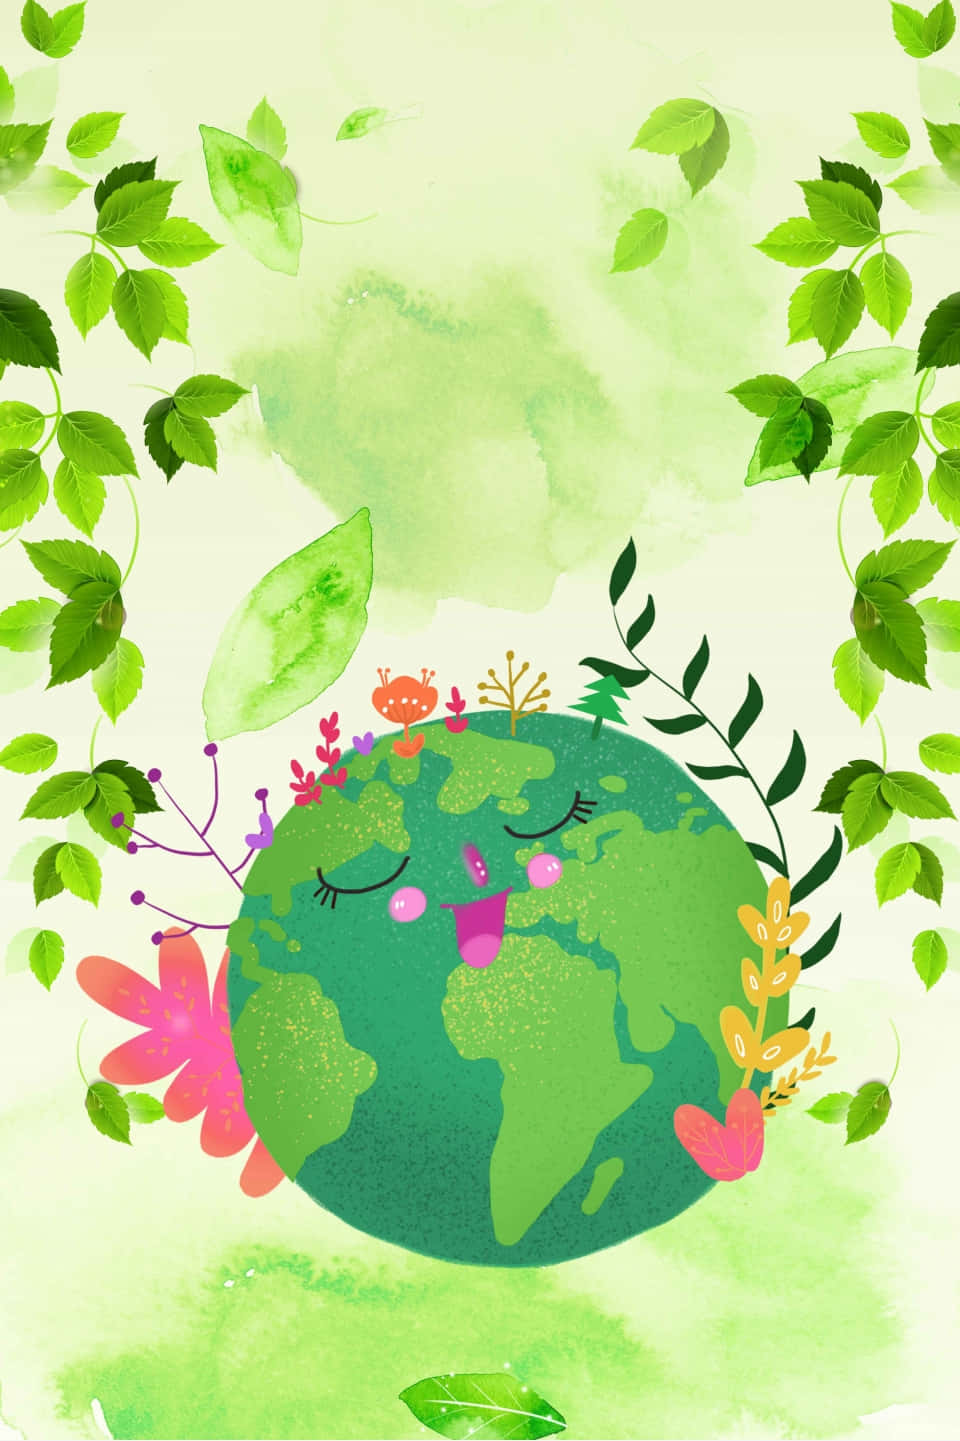 Jordensdag-affisch - Jordens Dag-affisch